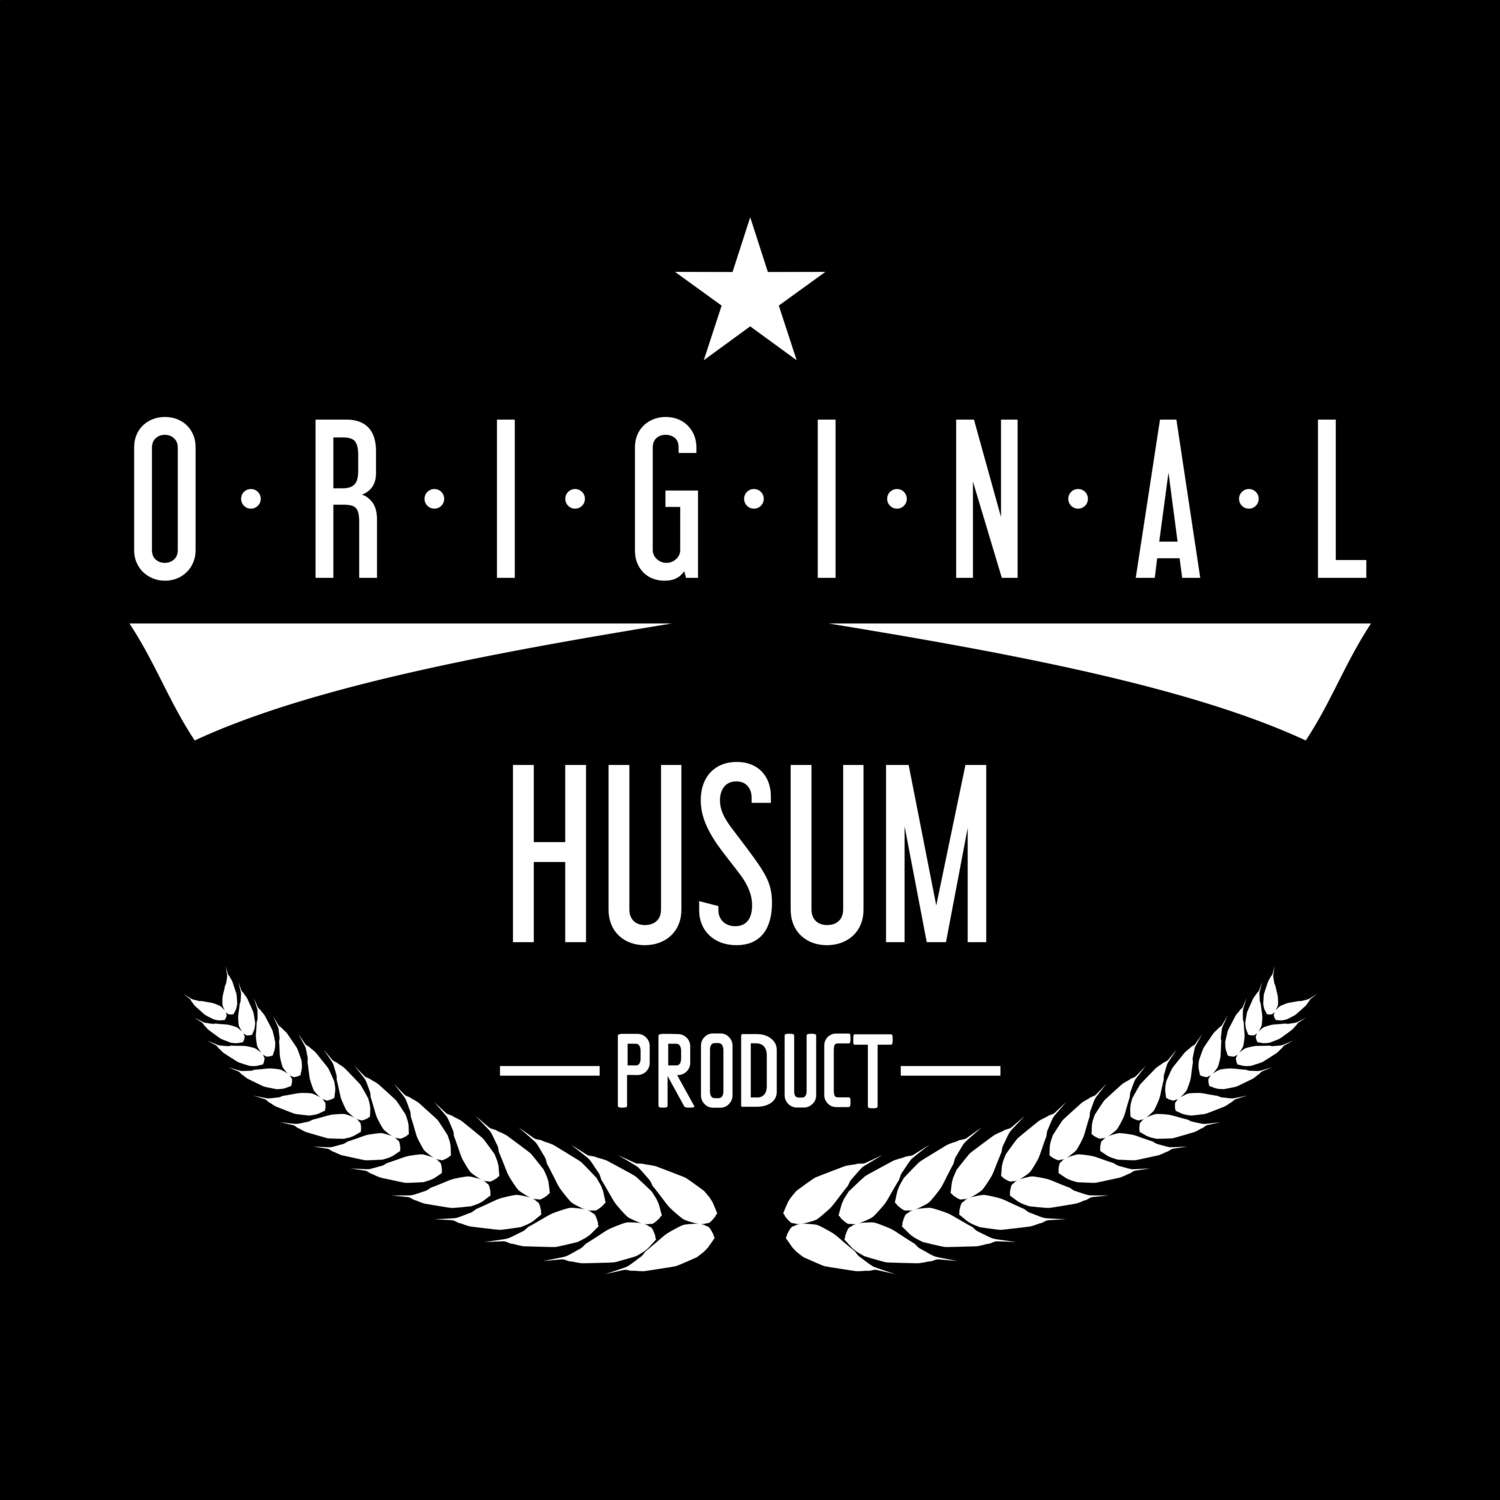 Husum T-Shirt »Original Product«